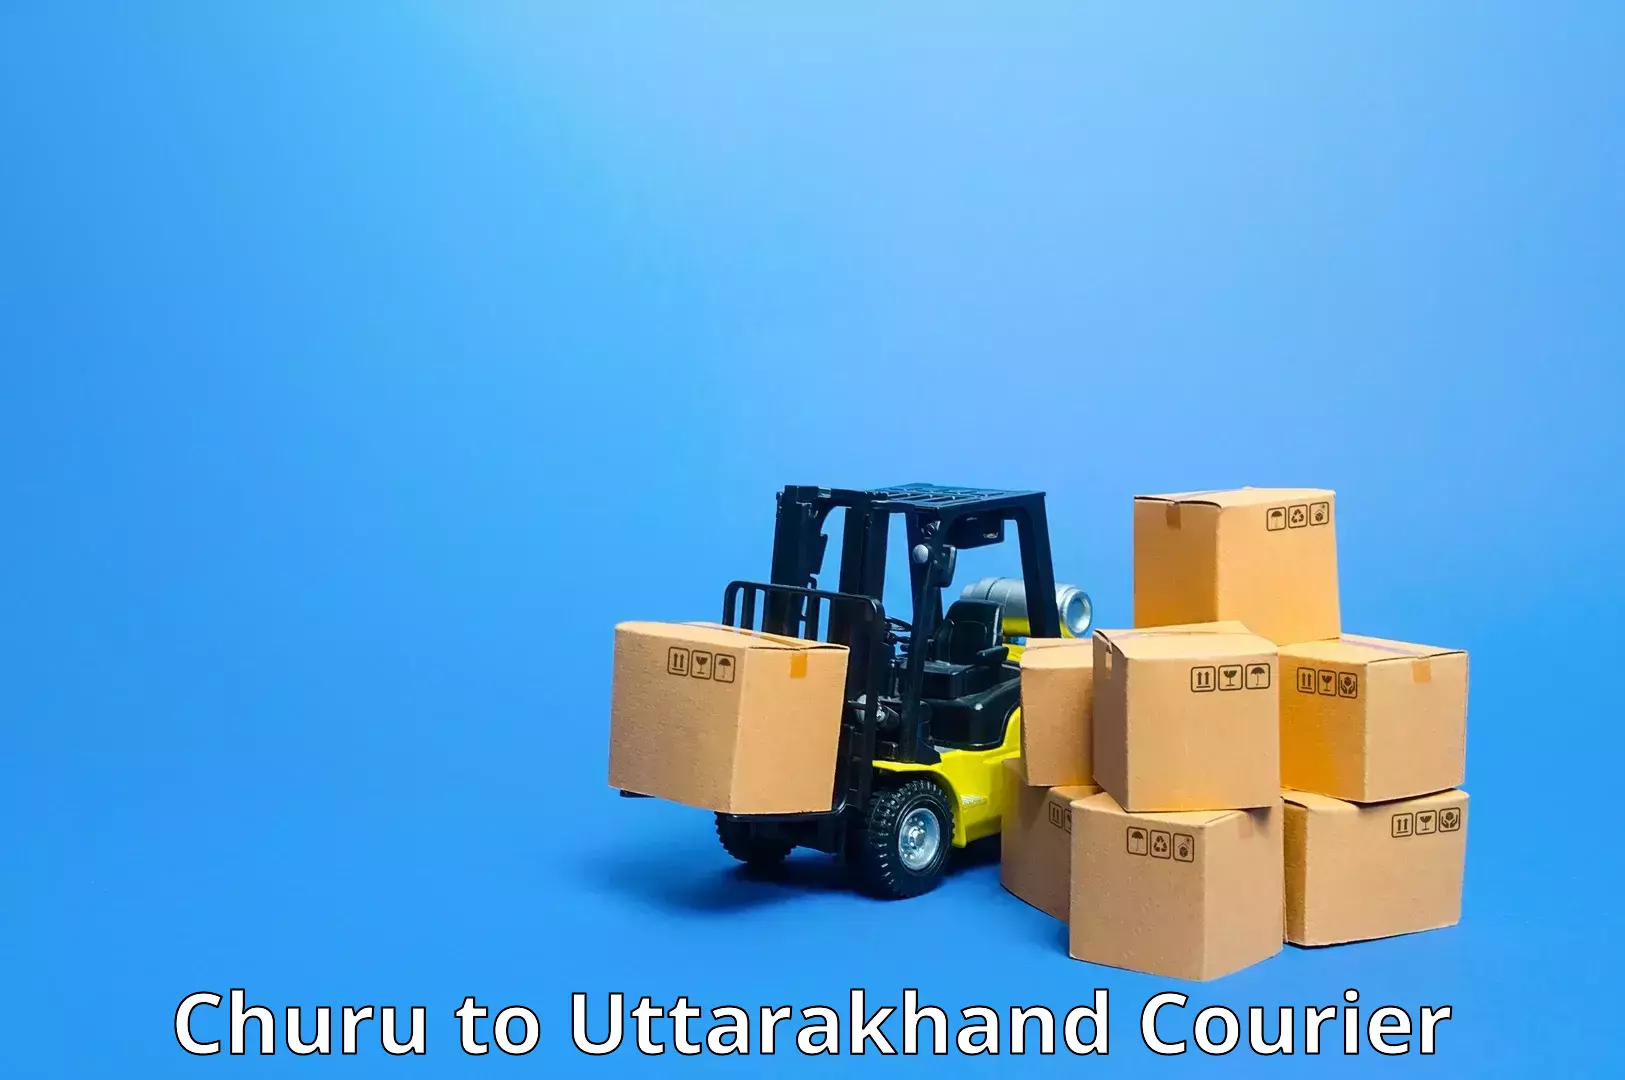 Efficient parcel service Churu to Tehri Garhwal